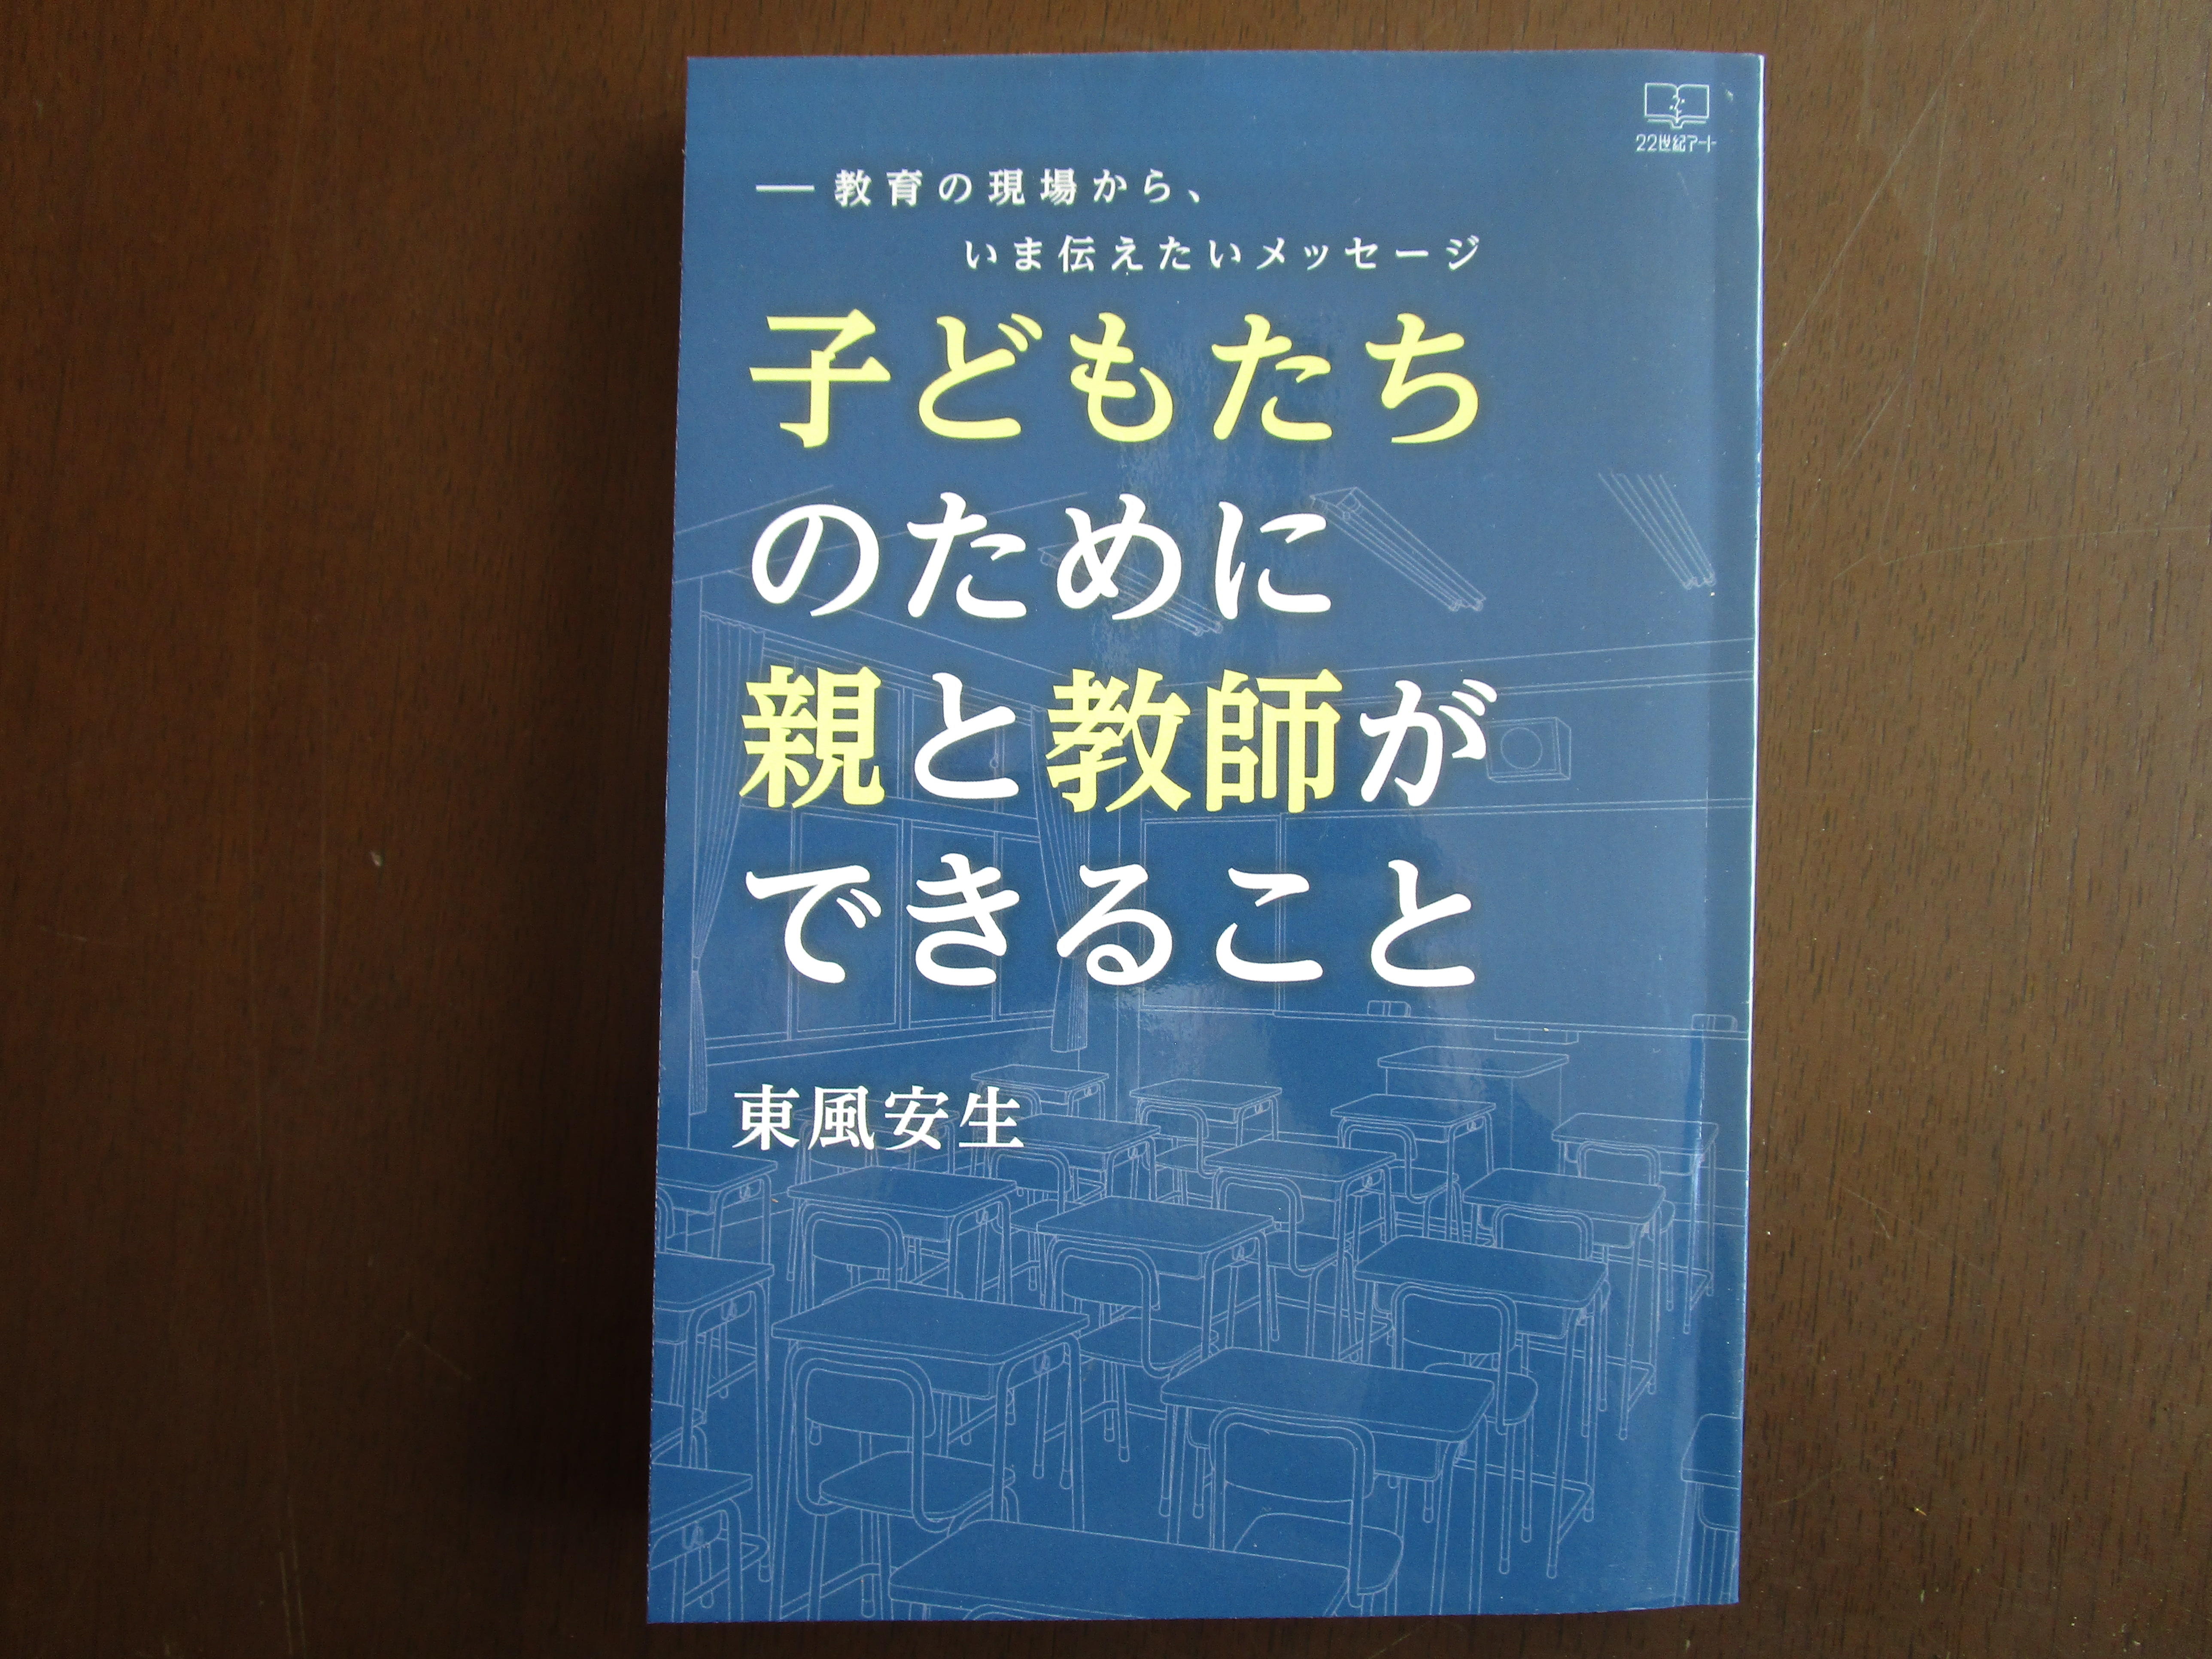 横浜商科大学の東風安生教授による著作『子どもたちのために親と教師ができること』が出版 -- 同大の出版助成金制度を活用、日本の教育について考える一冊